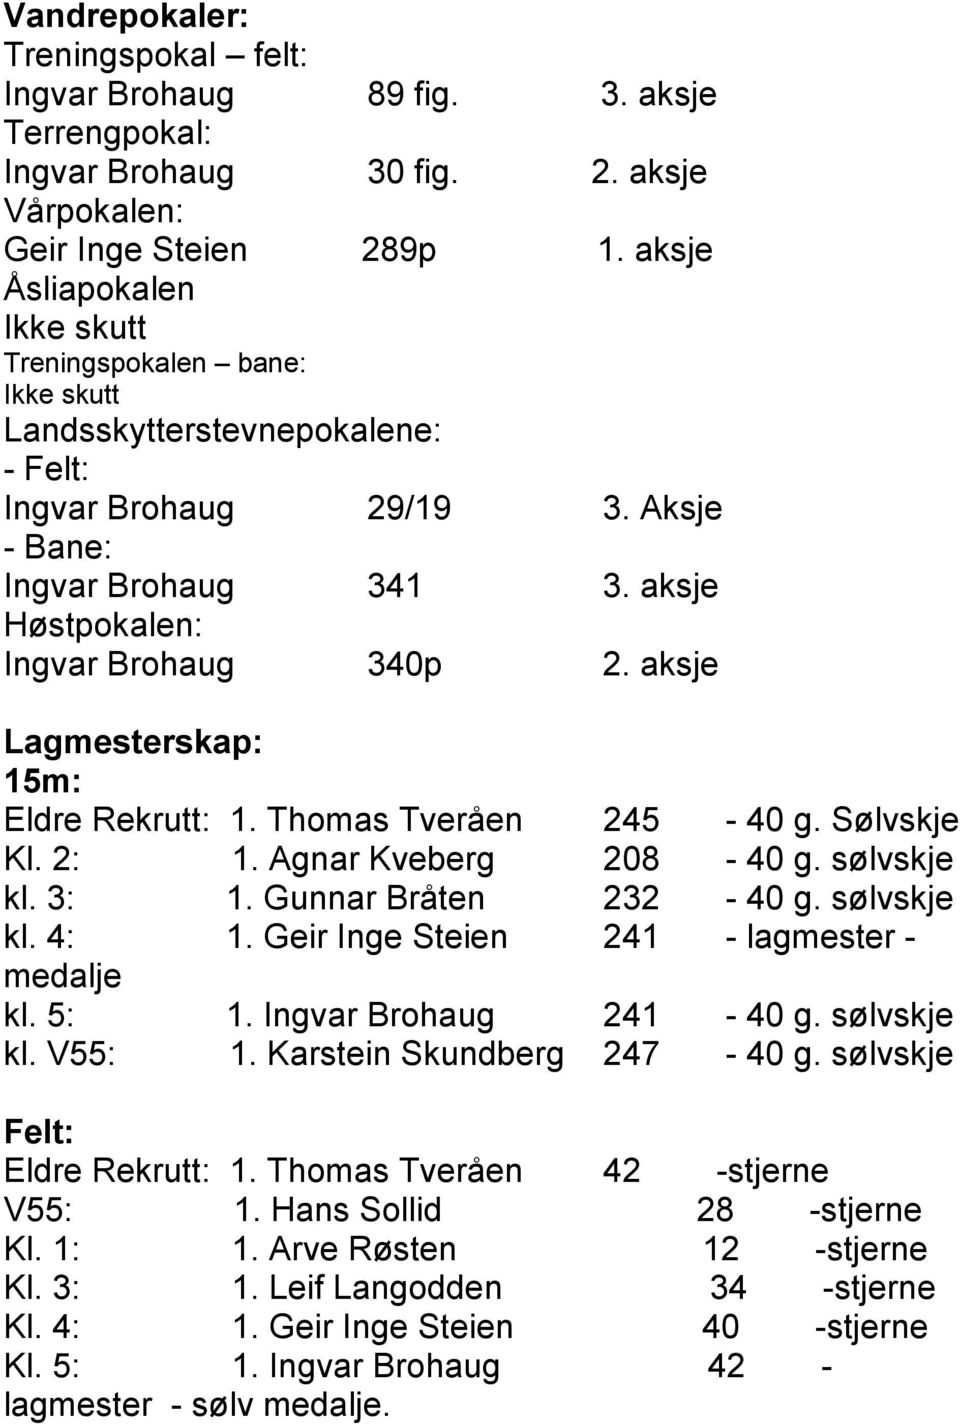 aksje Lagmesterskap: 15m: Eldre Rekrutt: 1. Thomas Tveråen 245-40 g. Sølvskje Kl. 2: 1. Agnar Kveberg 208-40 g. sølvskje kl. 3: 1. Gunnar Bråten 232-40 g. sølvskje kl. 4: 1.